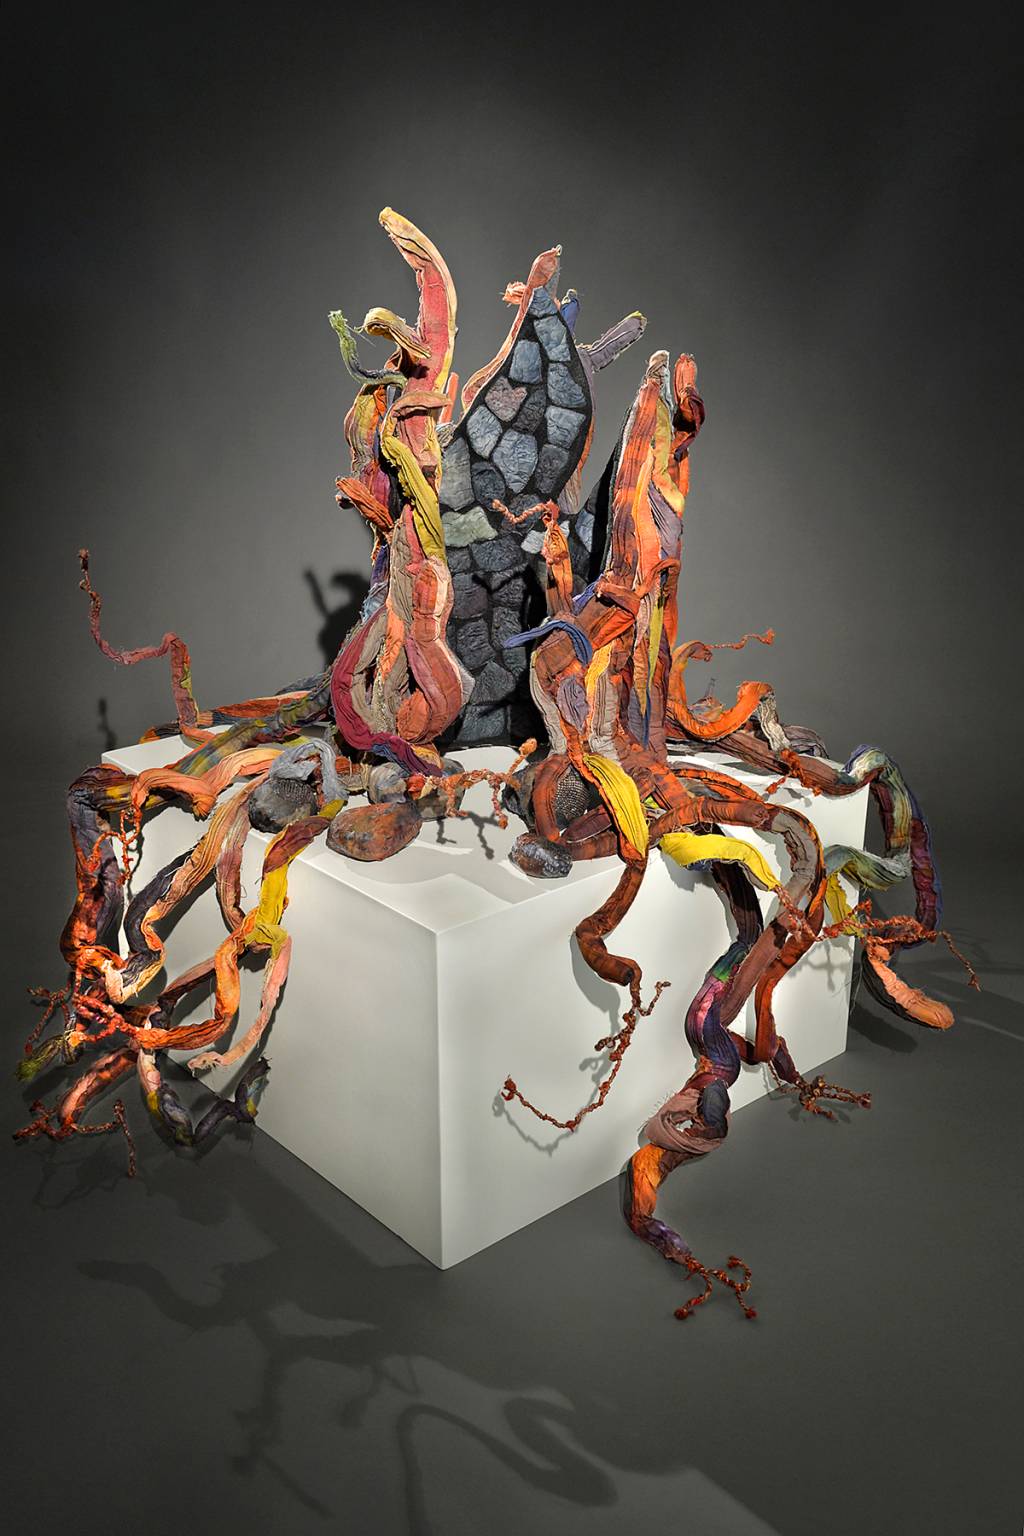 Escultura multicolorida, que lembra tentáculos, sobre um cubo branco